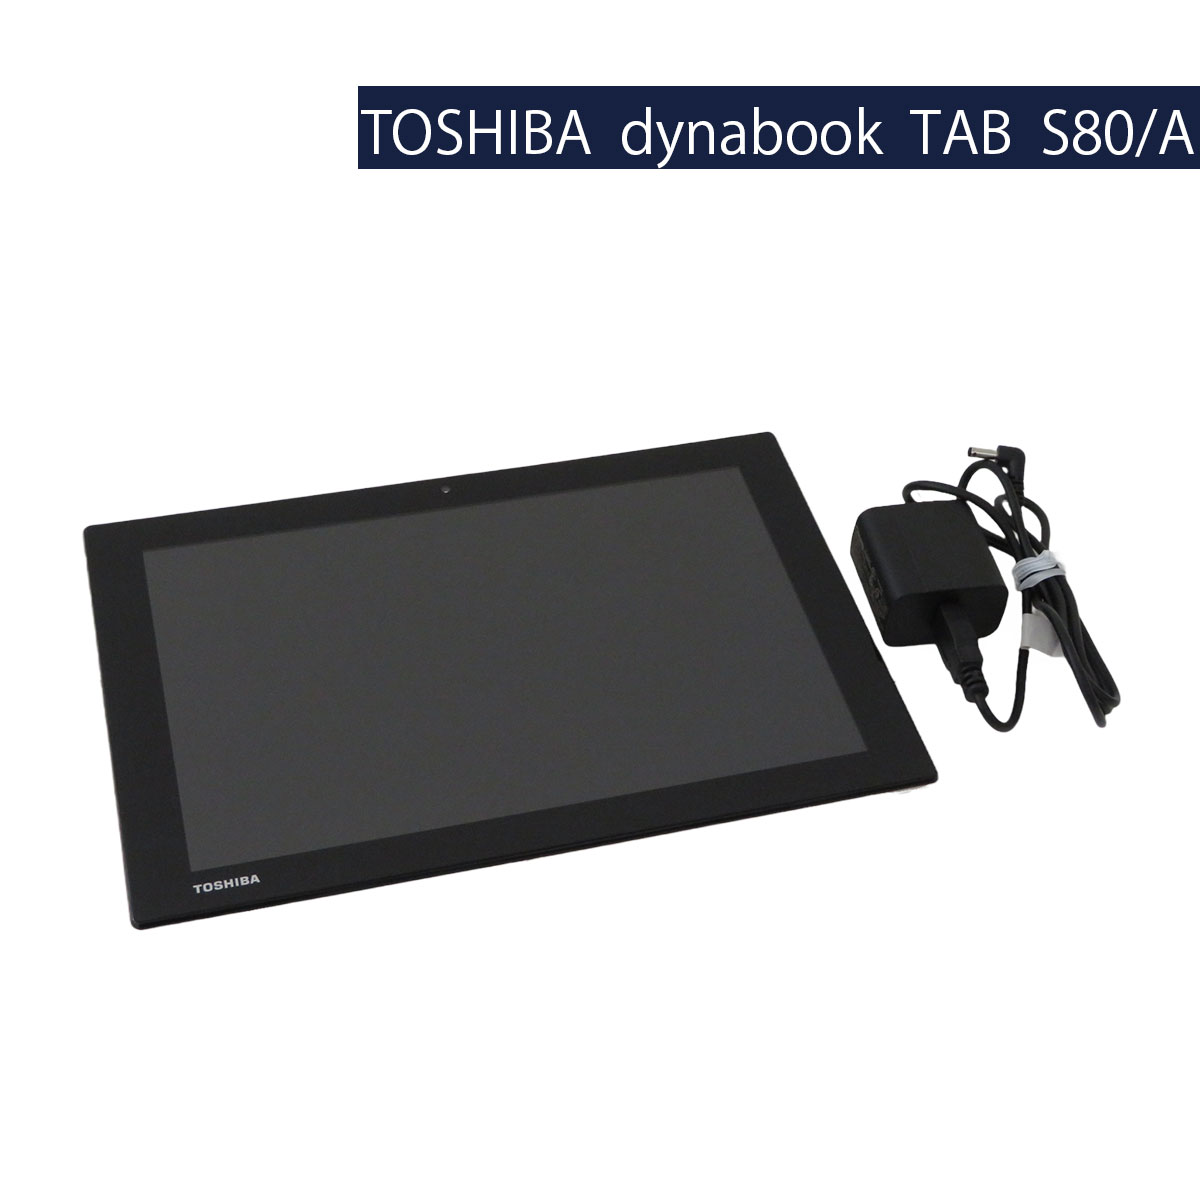 TOSHIBA dyanabook Tab S80/A Atom x5-Z8300 4GB SSD 64GB